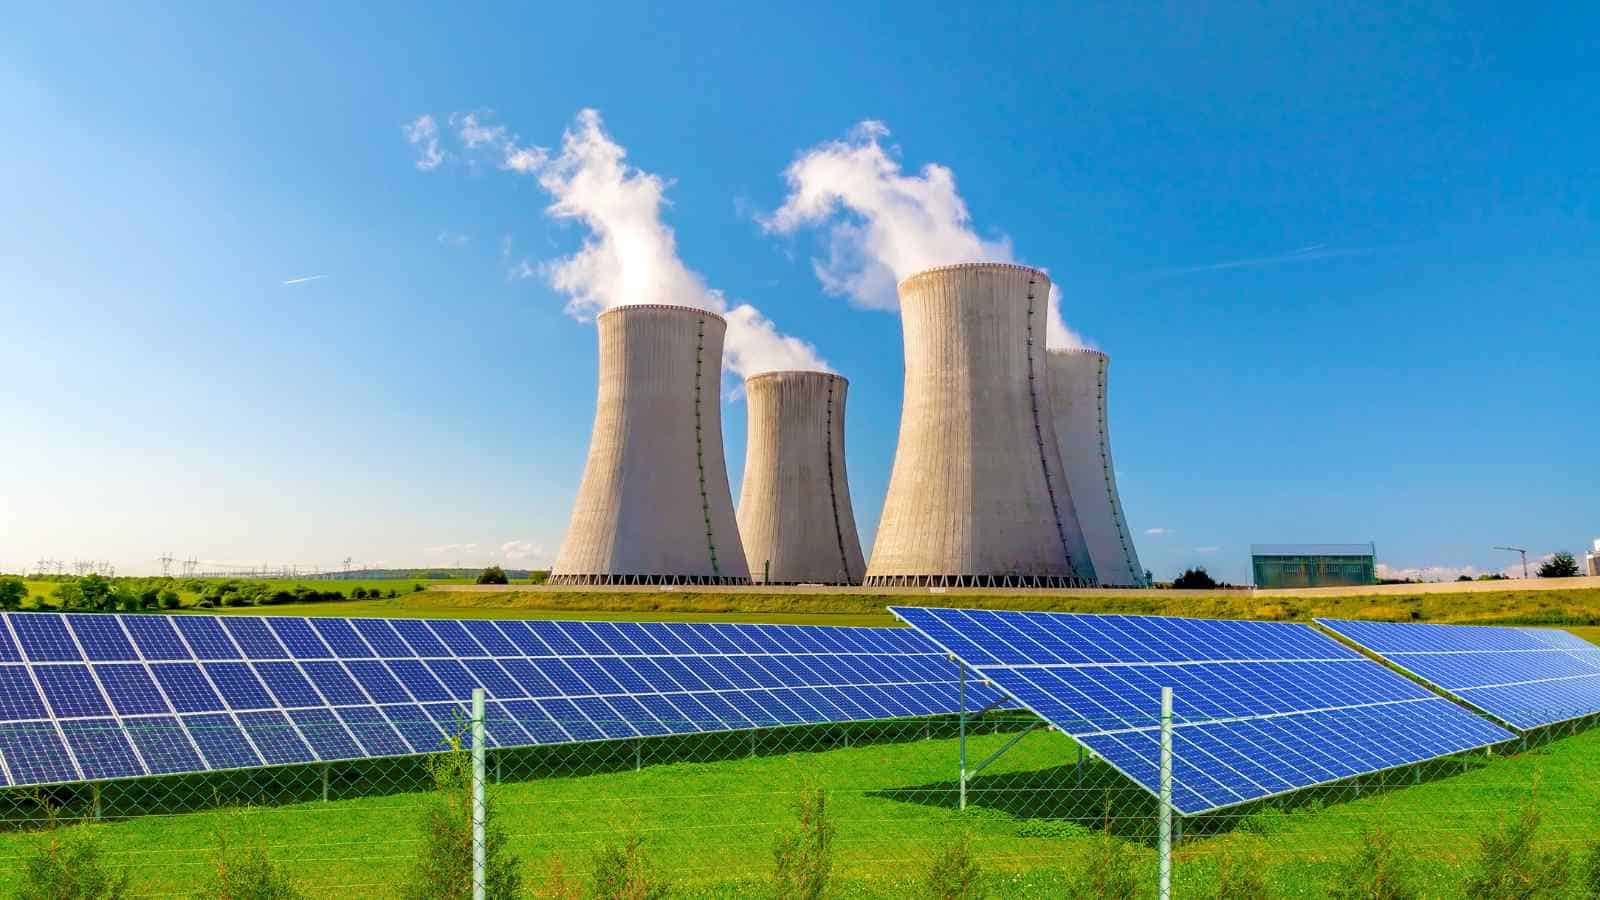 L'Italia ha bisogno di energie diversificate e anche del ritorno al nucleare, secondo il ministro Pichetto Fratin